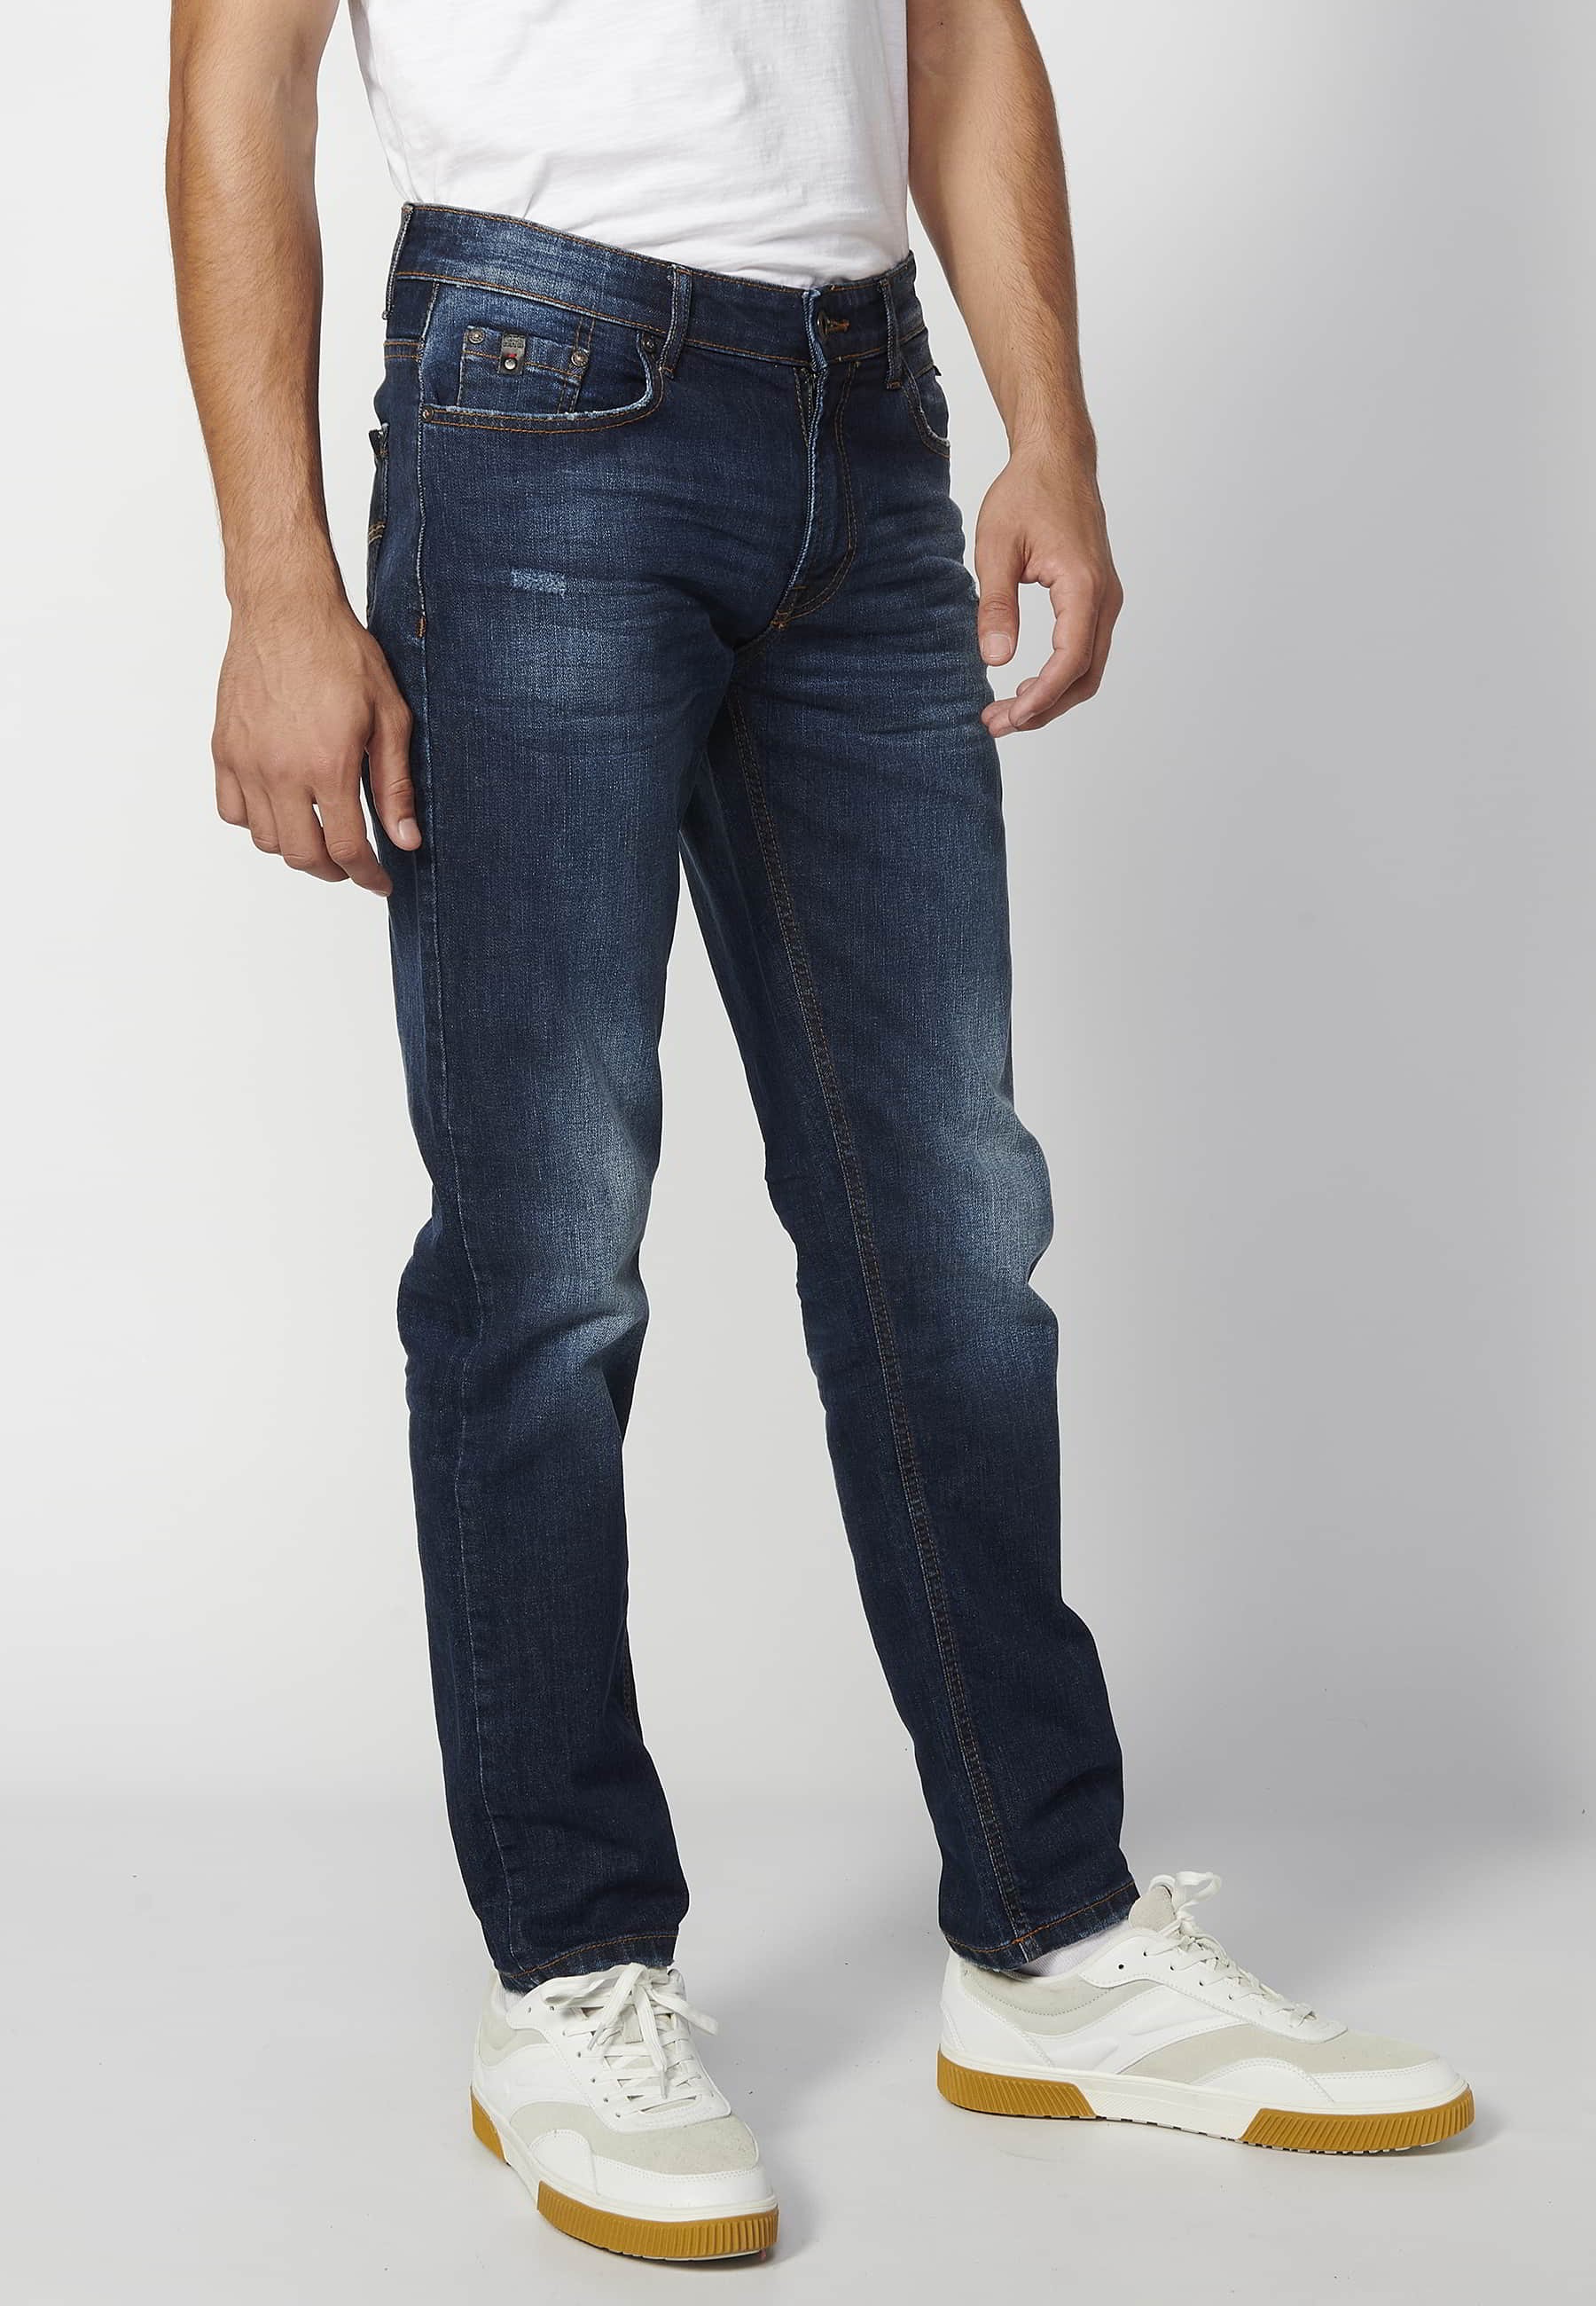 Pantalons llargs jeans strech regular fit, color Blau Mitjà, per a homes